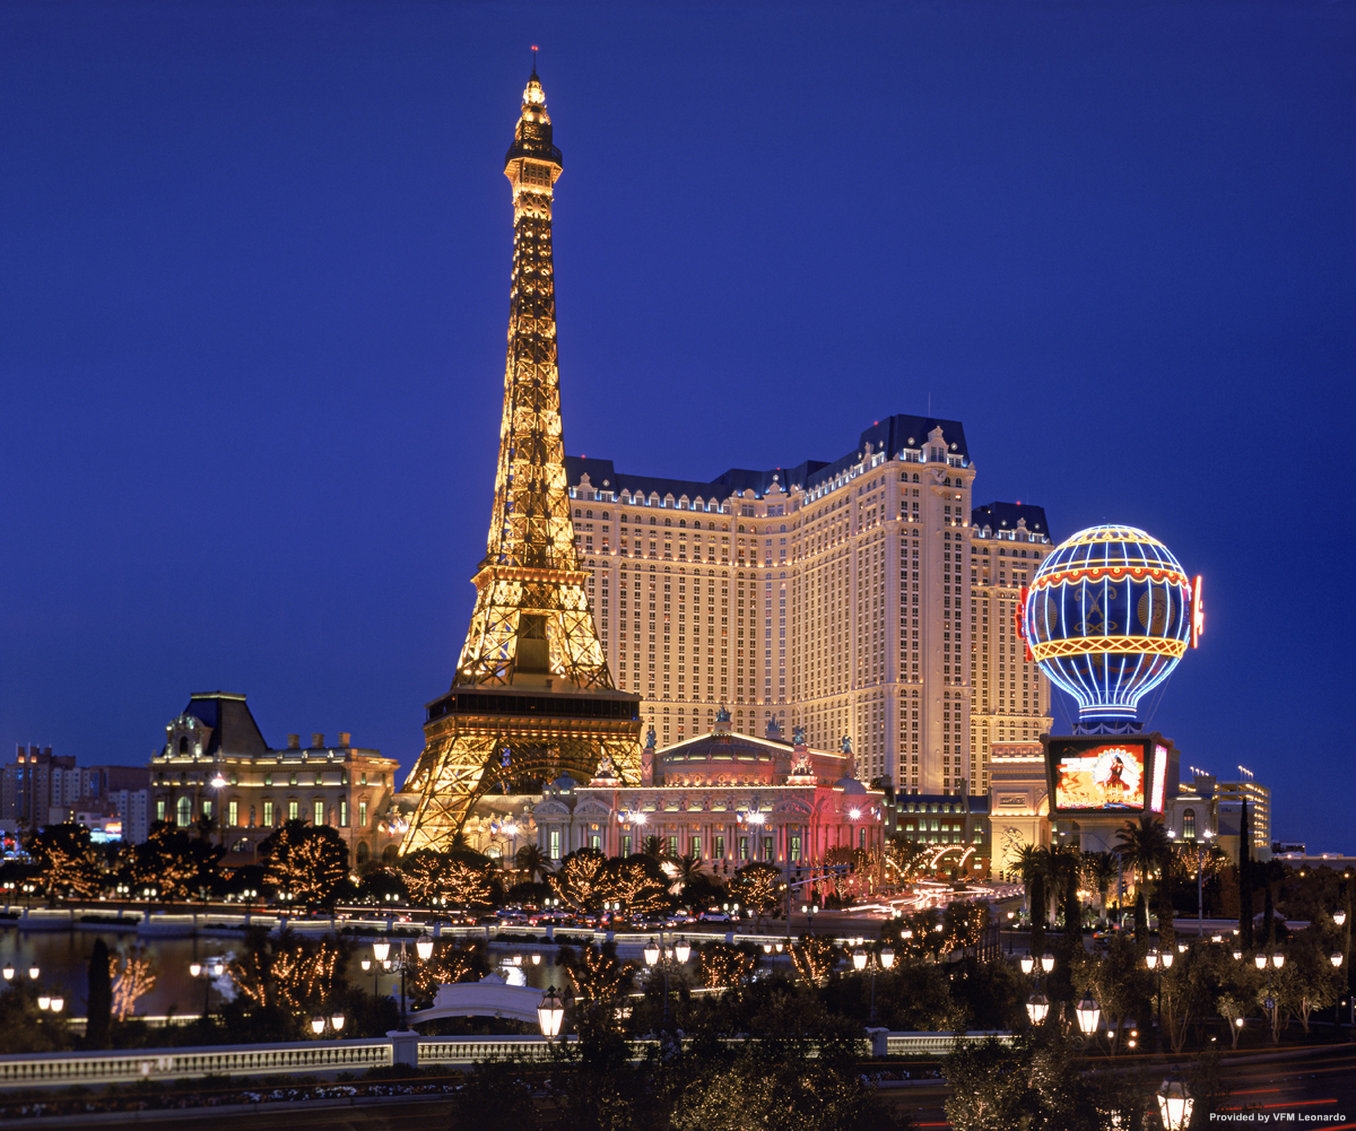 Paris Hotel Las Vegas: ALL the Important Info!